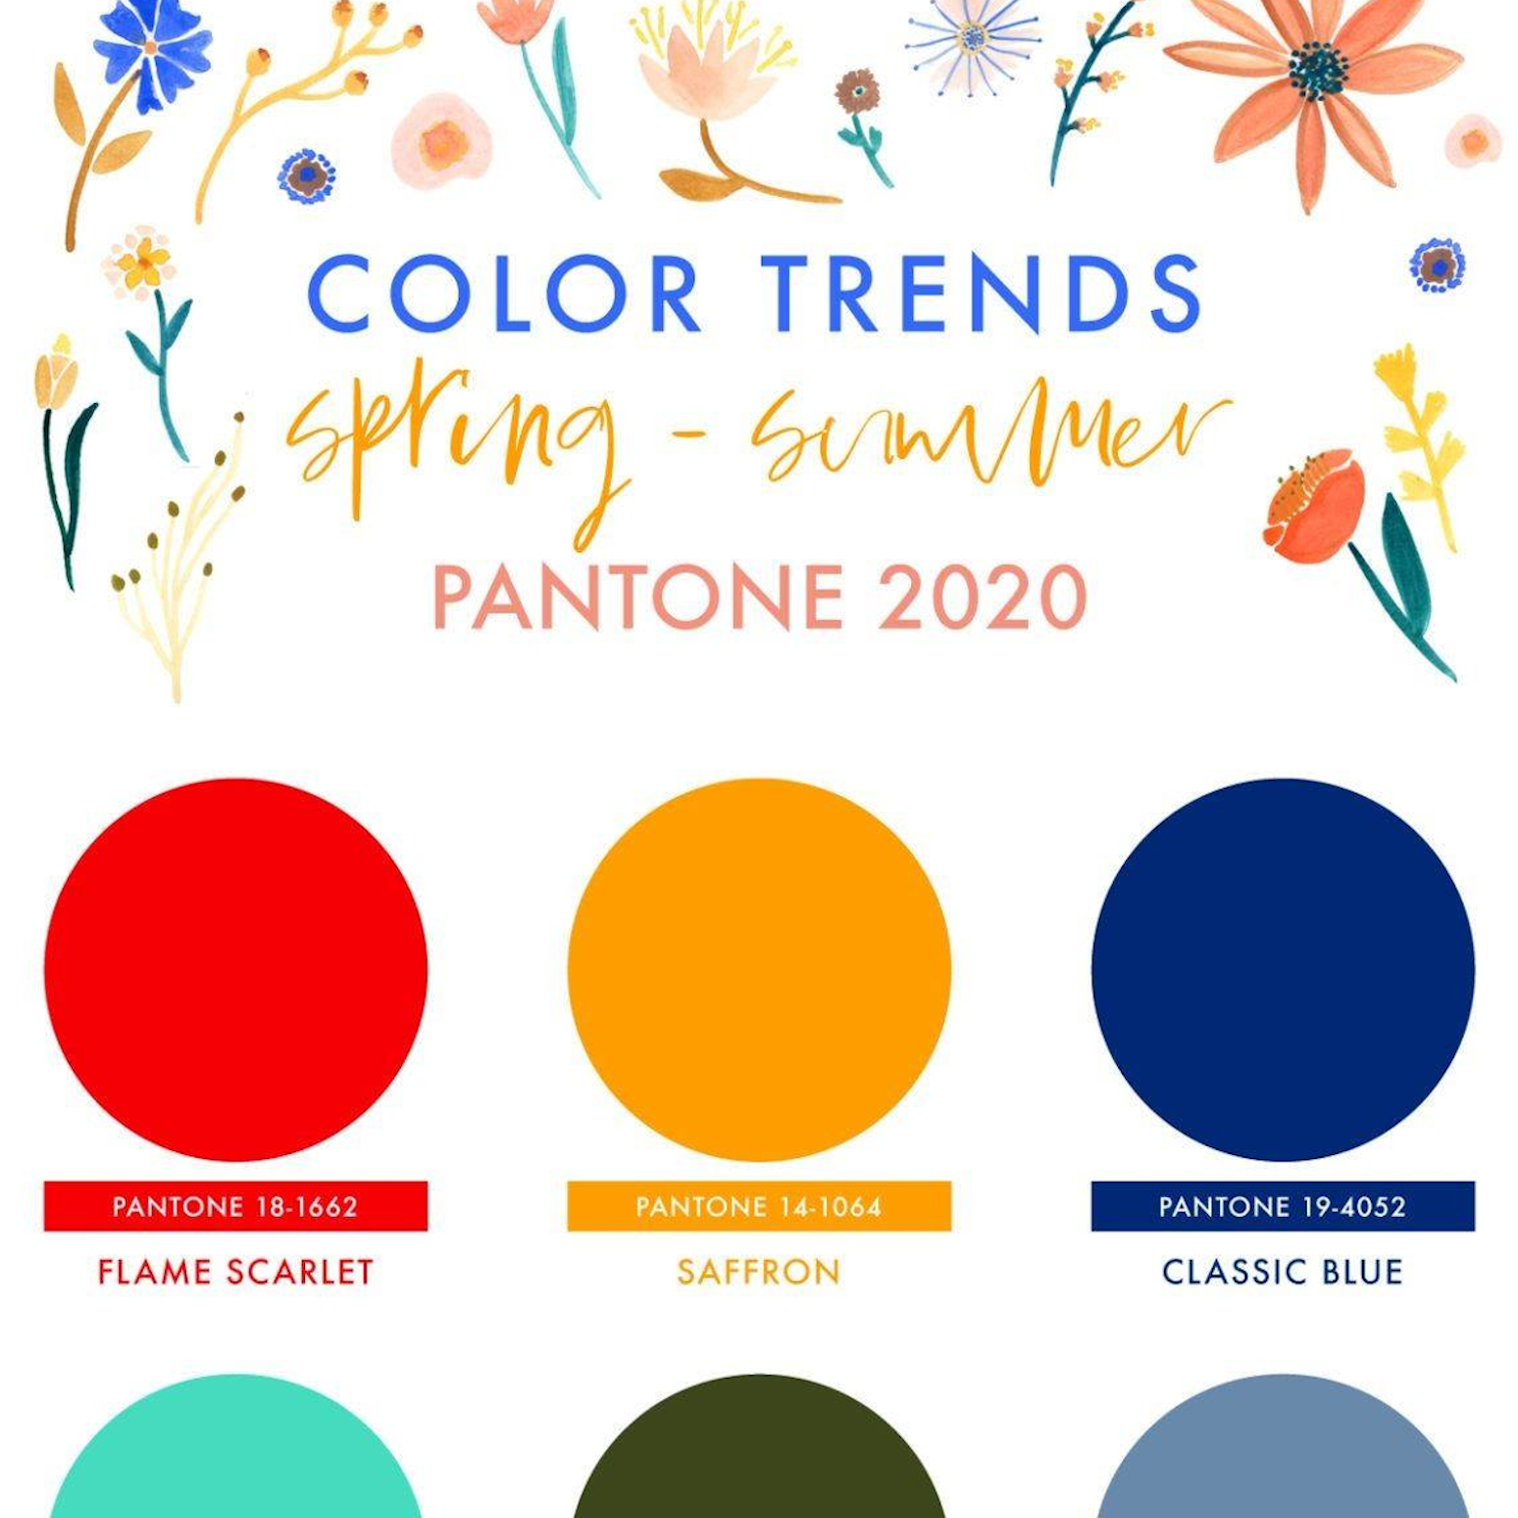 Modne kolory w sezonie 2020